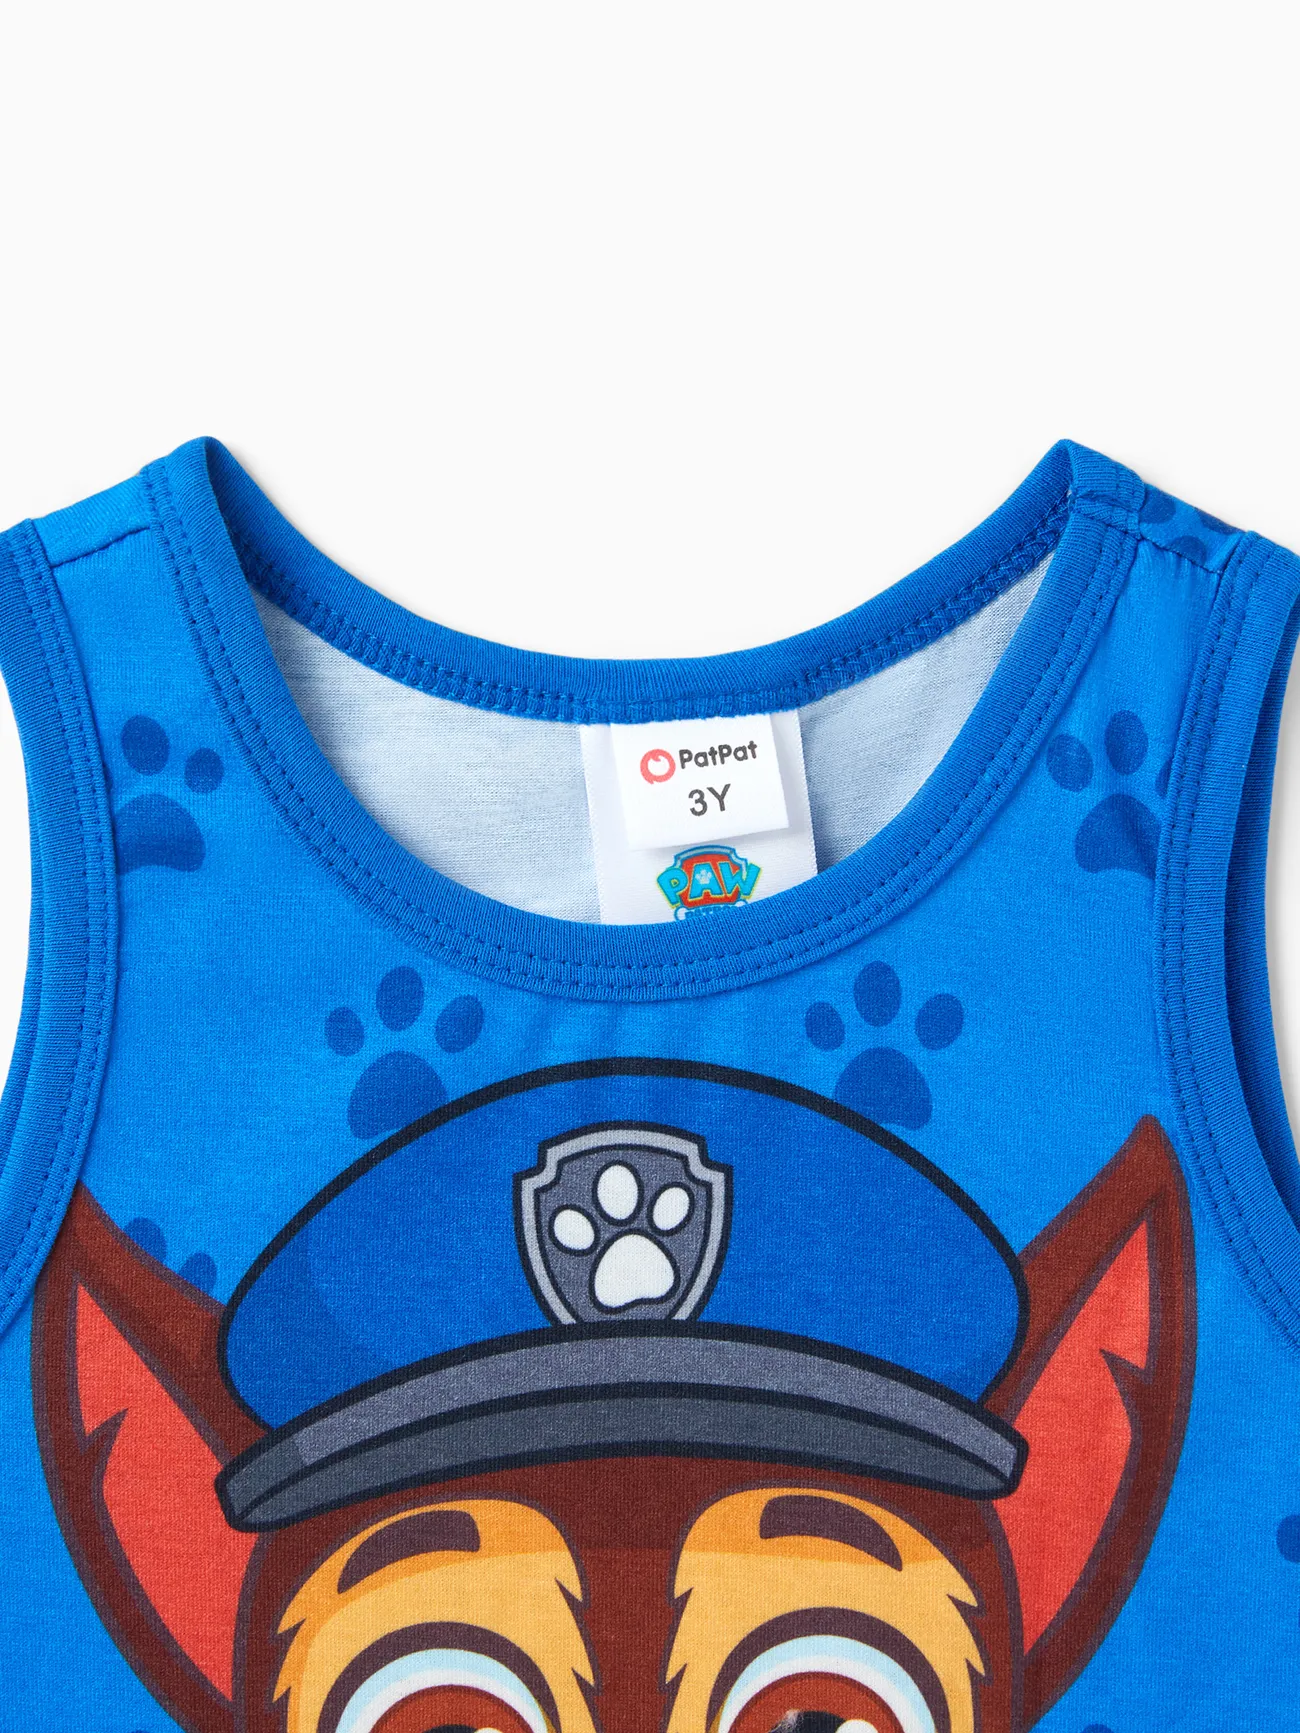 PAW Patrulha Criança Menino Personagem Print Naia™ Tank Top Azul big image 1